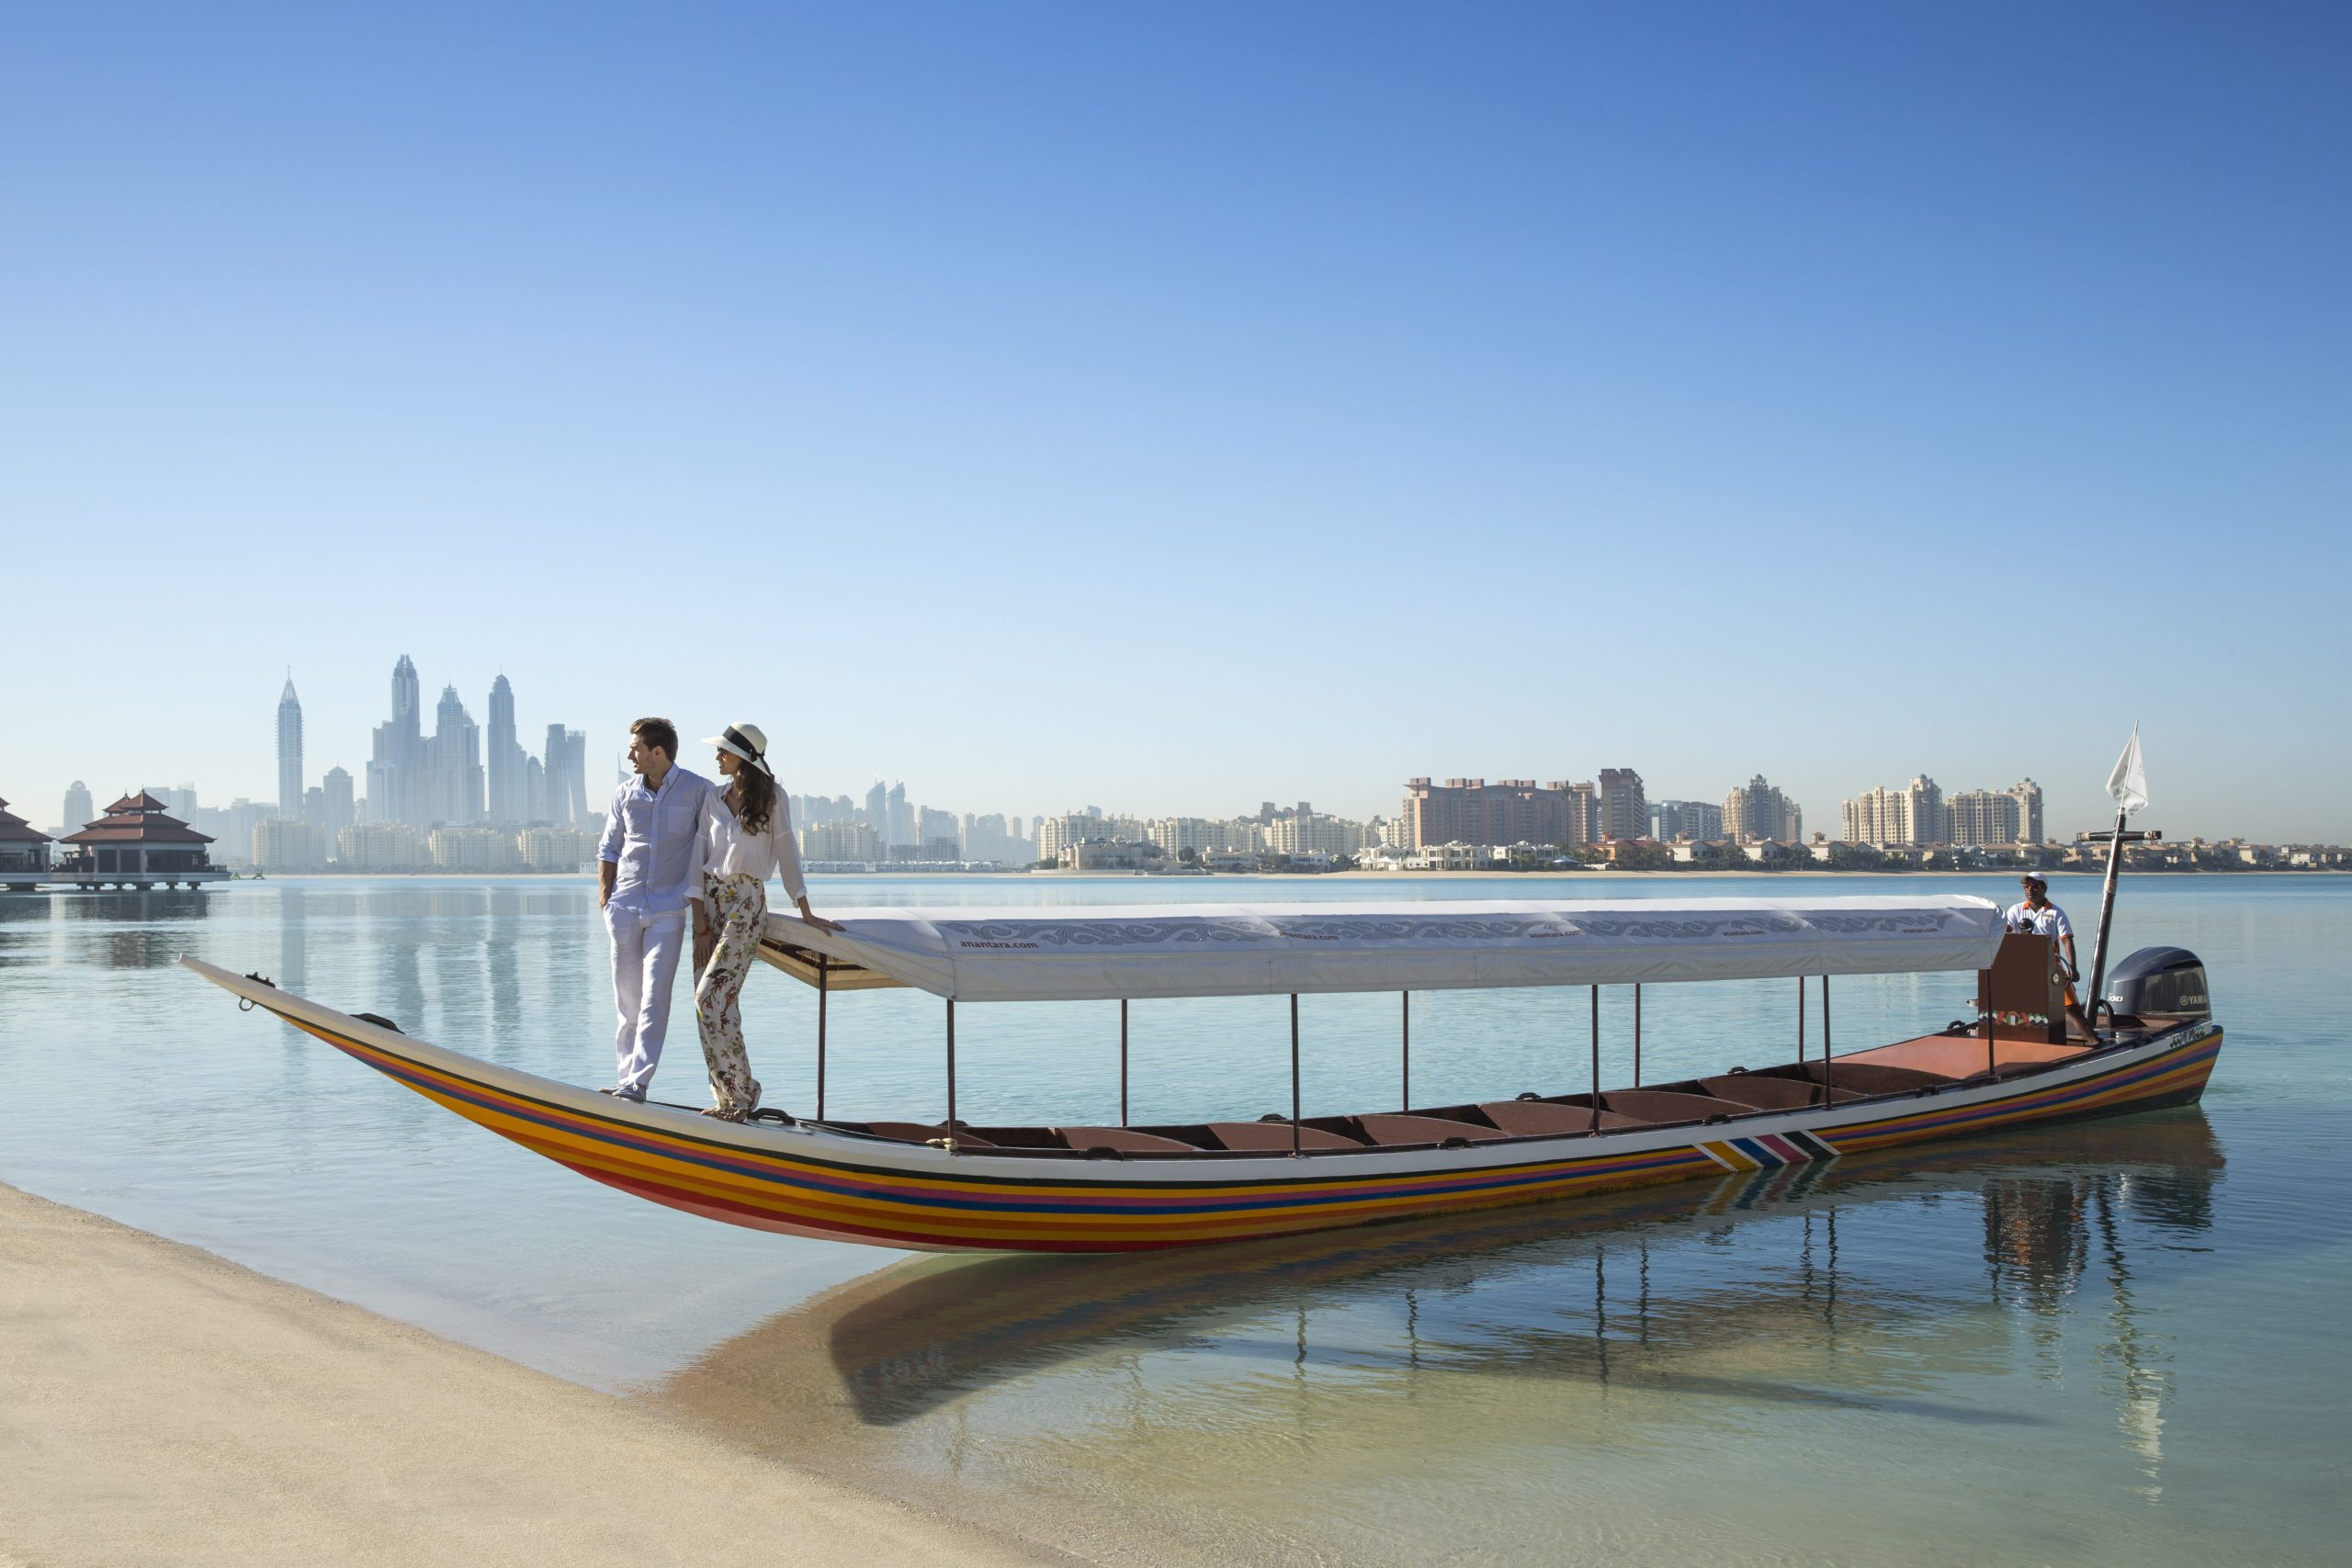 Anantara_The_Palm_Dubai_Resort و Anantara_World_Islands_Dubai_Resort_Two_Iscape_Dubai_Resort_Two_I